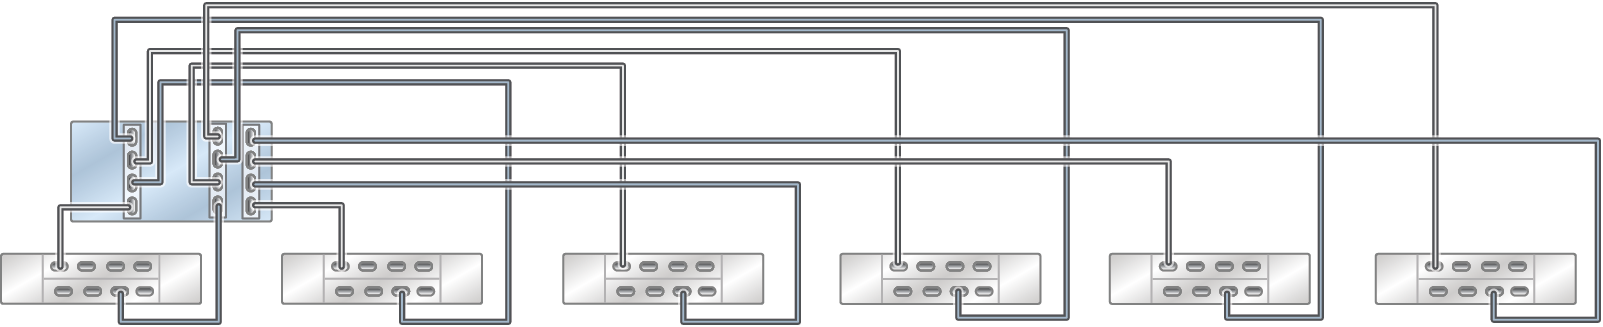 image:具有三个 HBA 且通过六个链连接到六个 DE3-24 磁盘机框的单机 ZS5-4 控制器